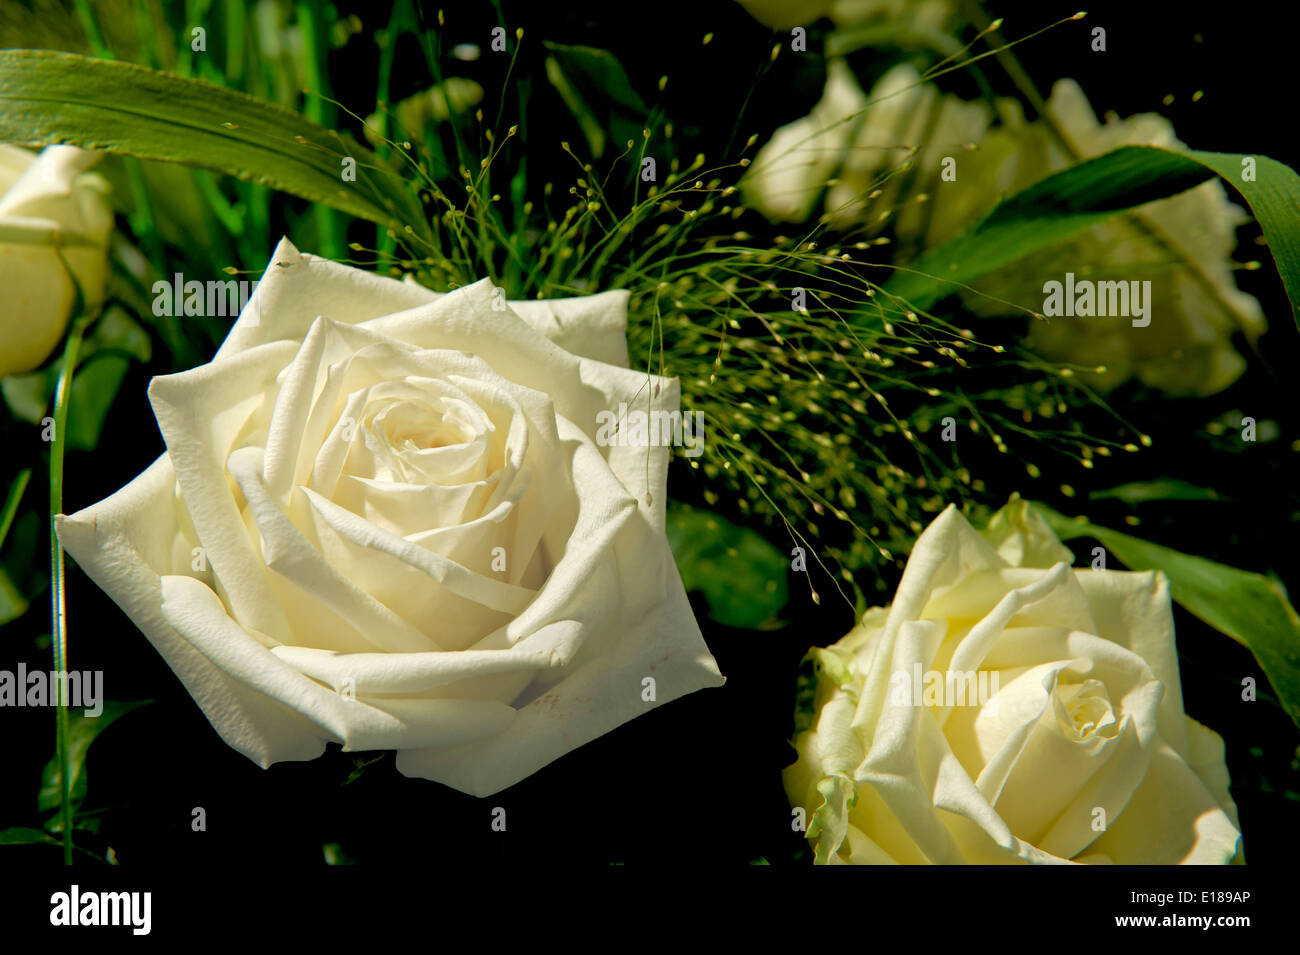 Rose,white,Blume,Flower,bloom,green,gruen,flora, Stock Photo